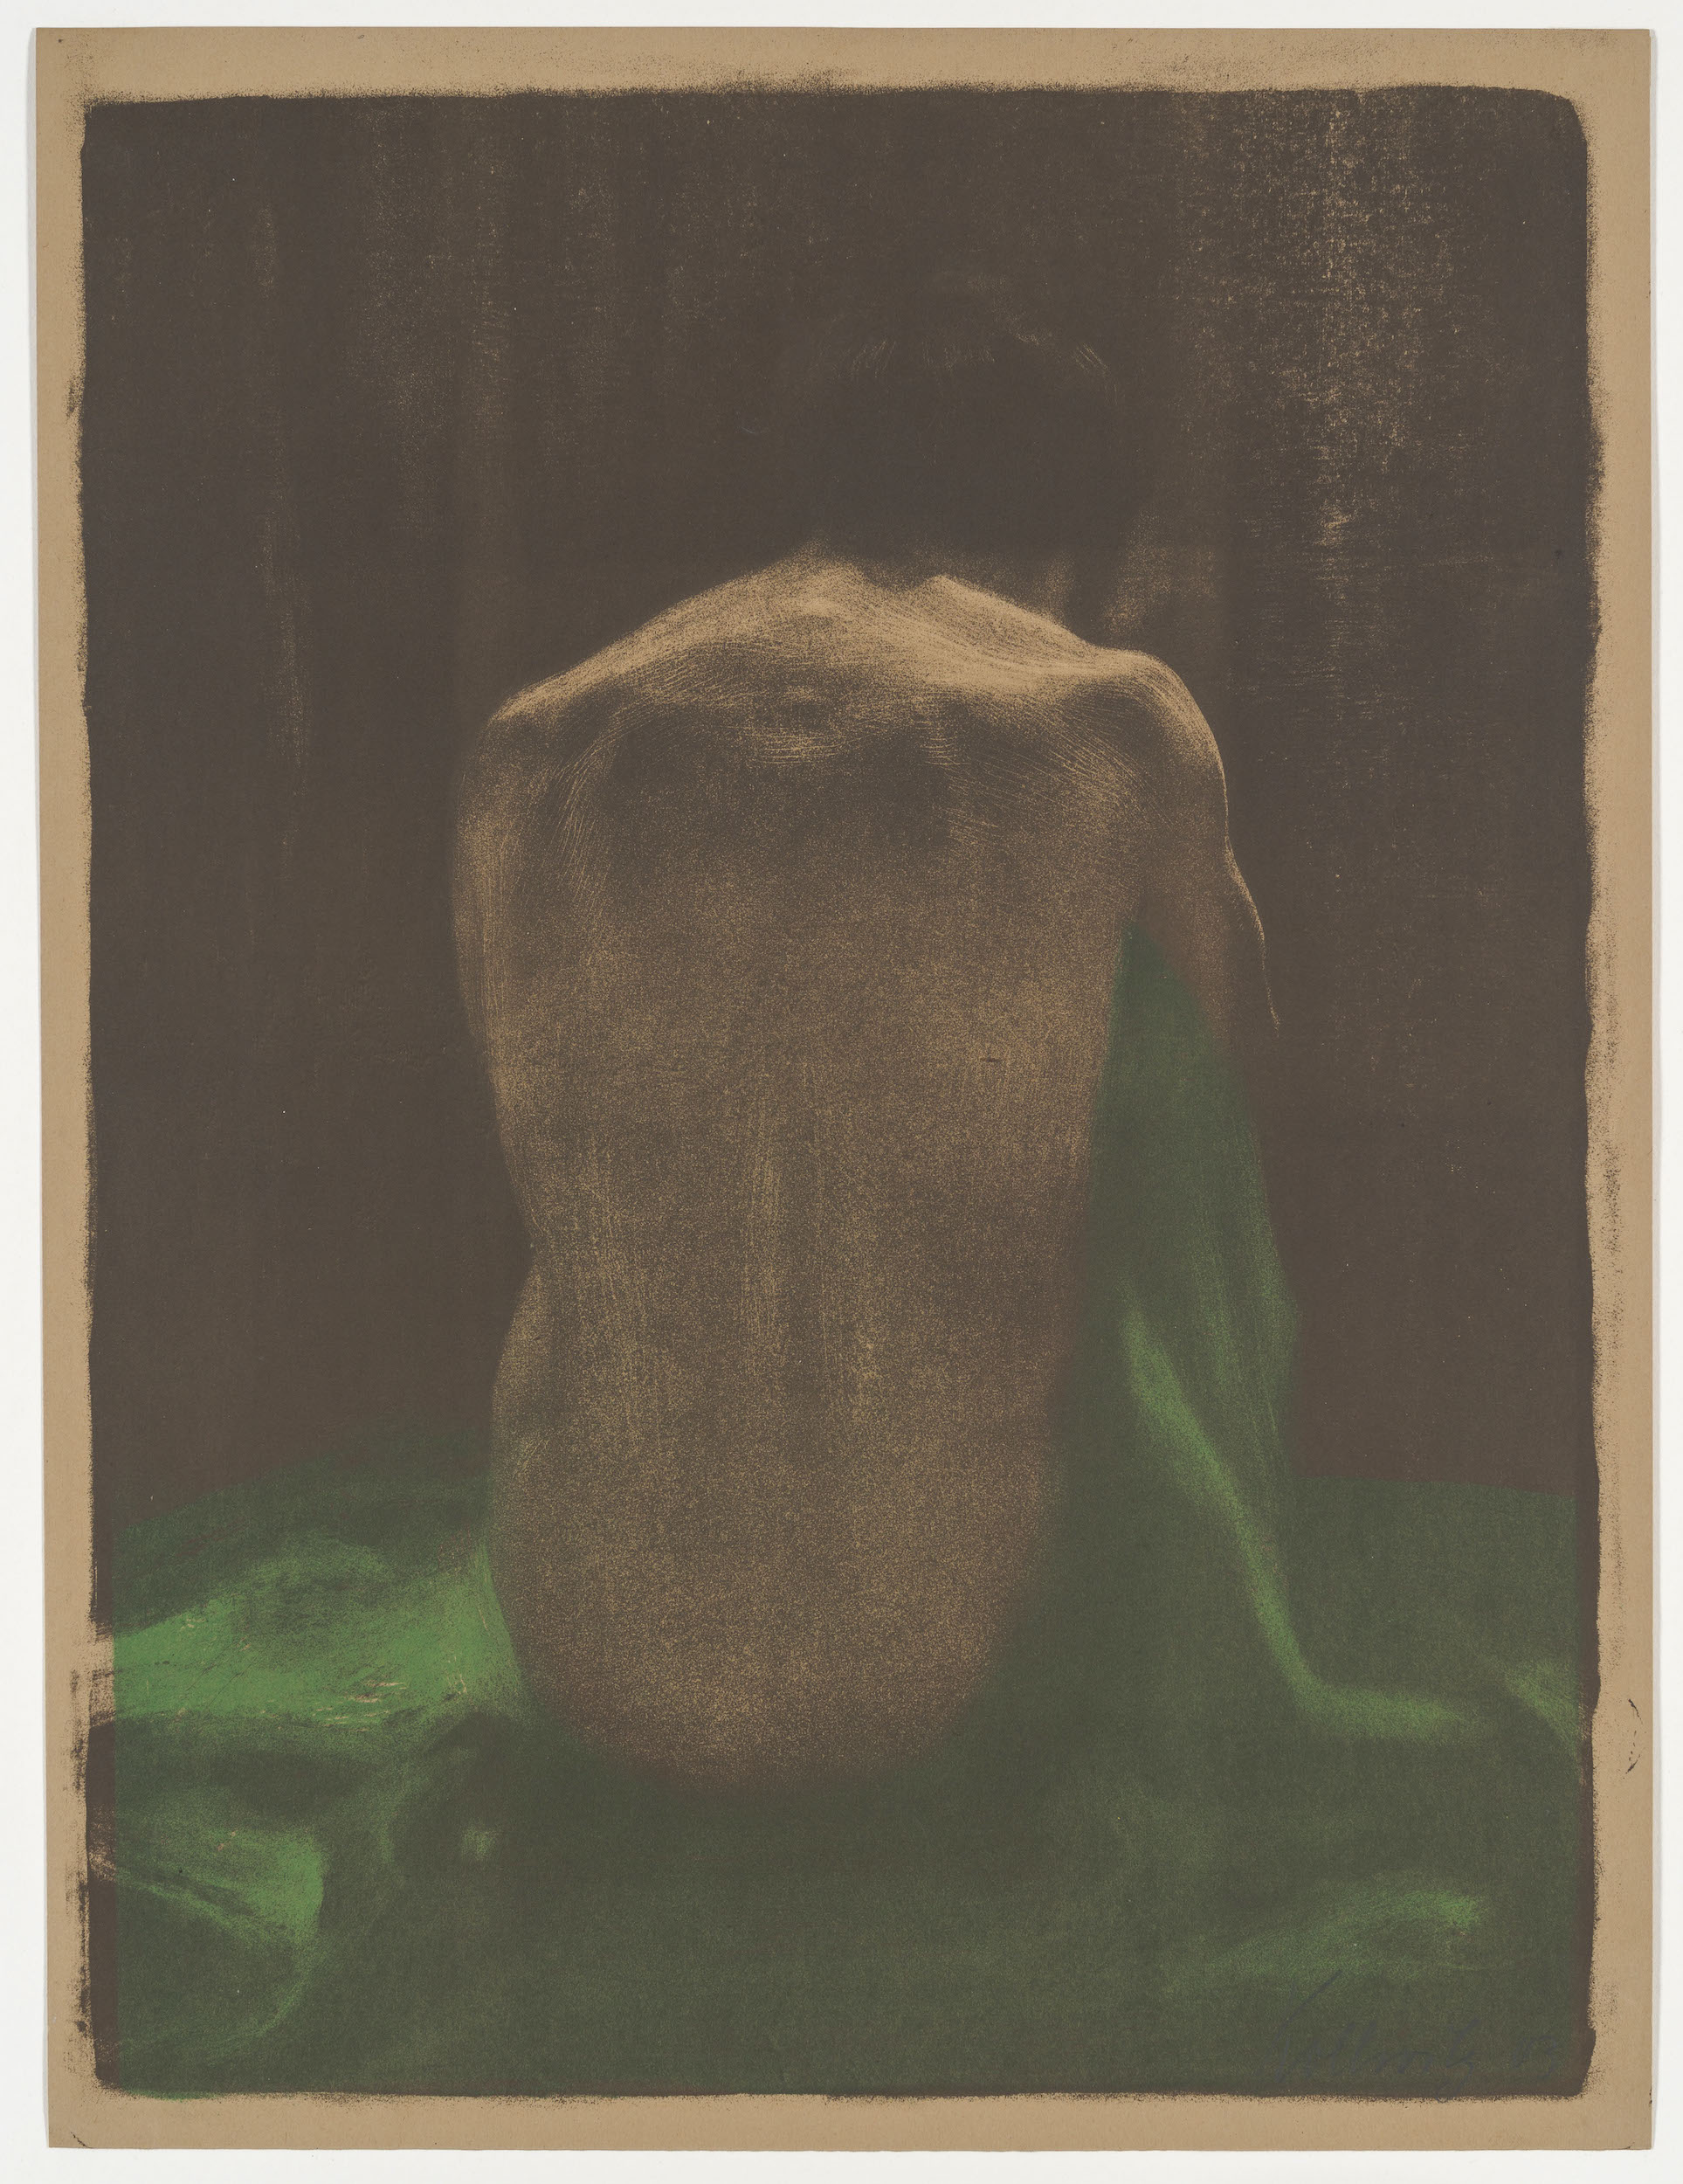 Rug van een vrouwelijk naakt op een groen laken by Käthe Kollwitz - 1903 - 58 x 44 cm Staatliche Kunstsammlungen Dresden